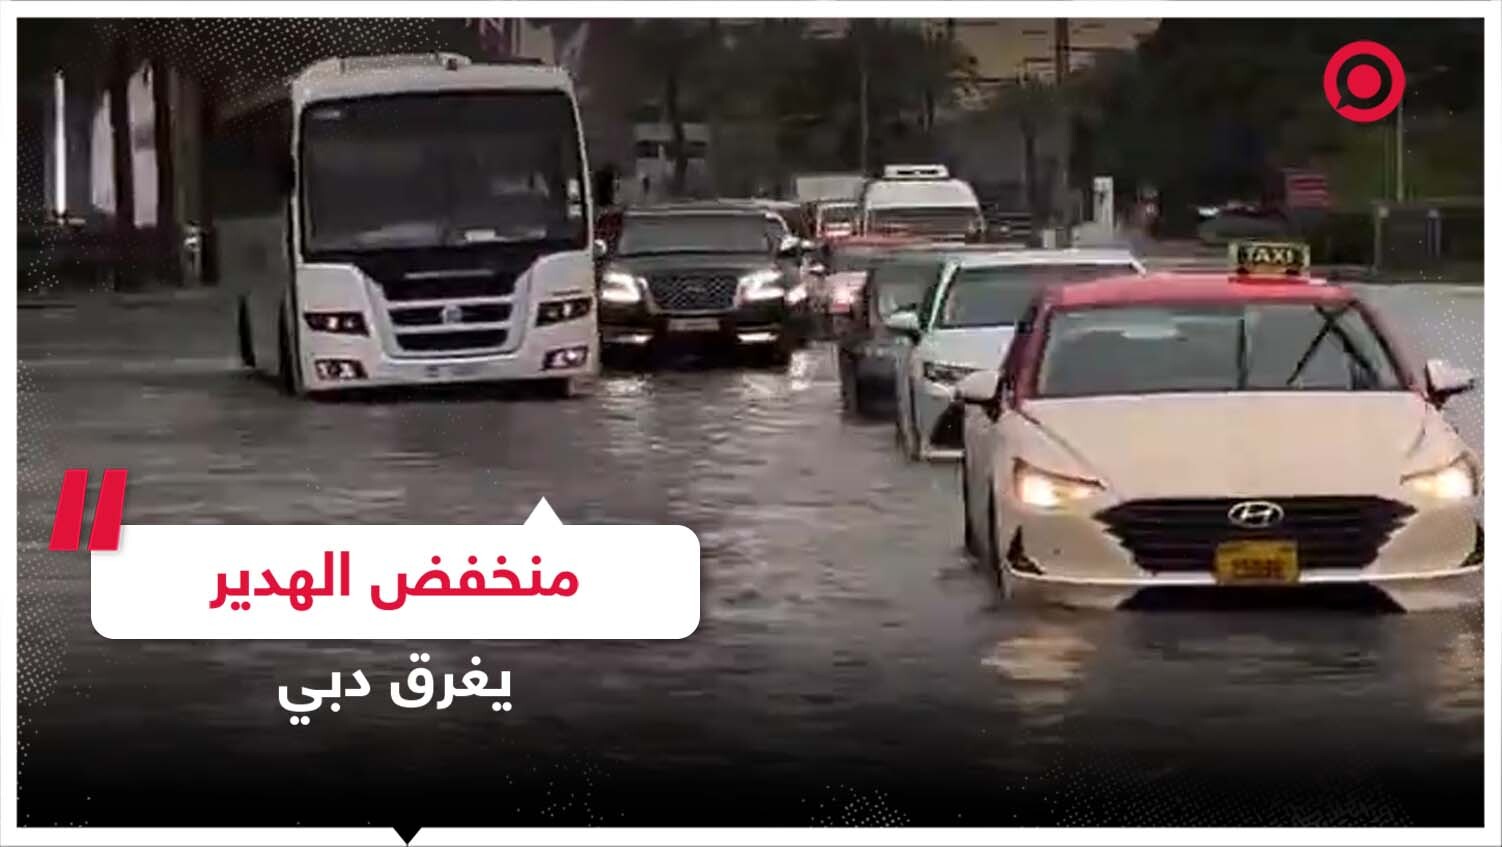 أمطار غزيرة هطلت على إمارة دبي بسبب "منخفض الهدير" الجوي